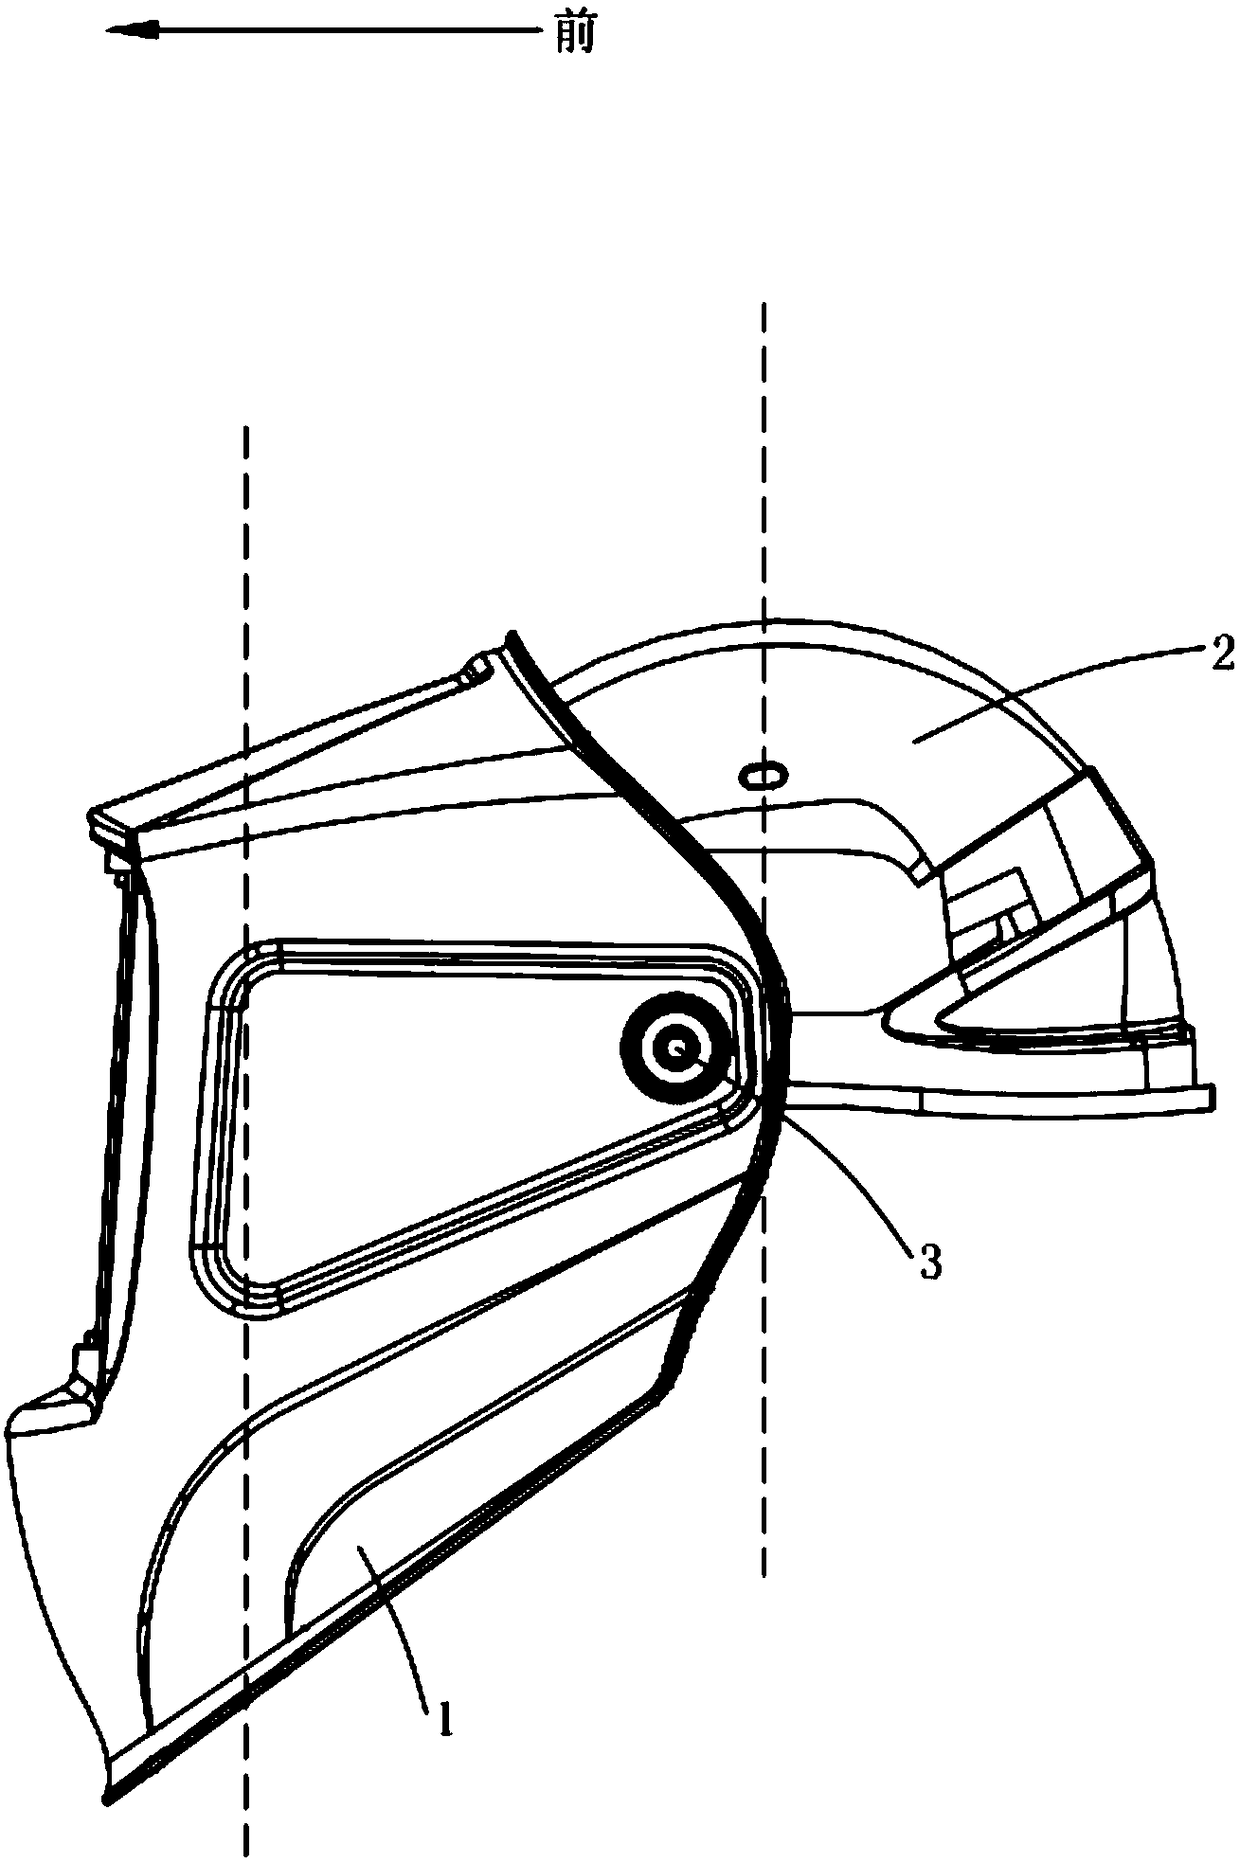 Head-mounted welding mask